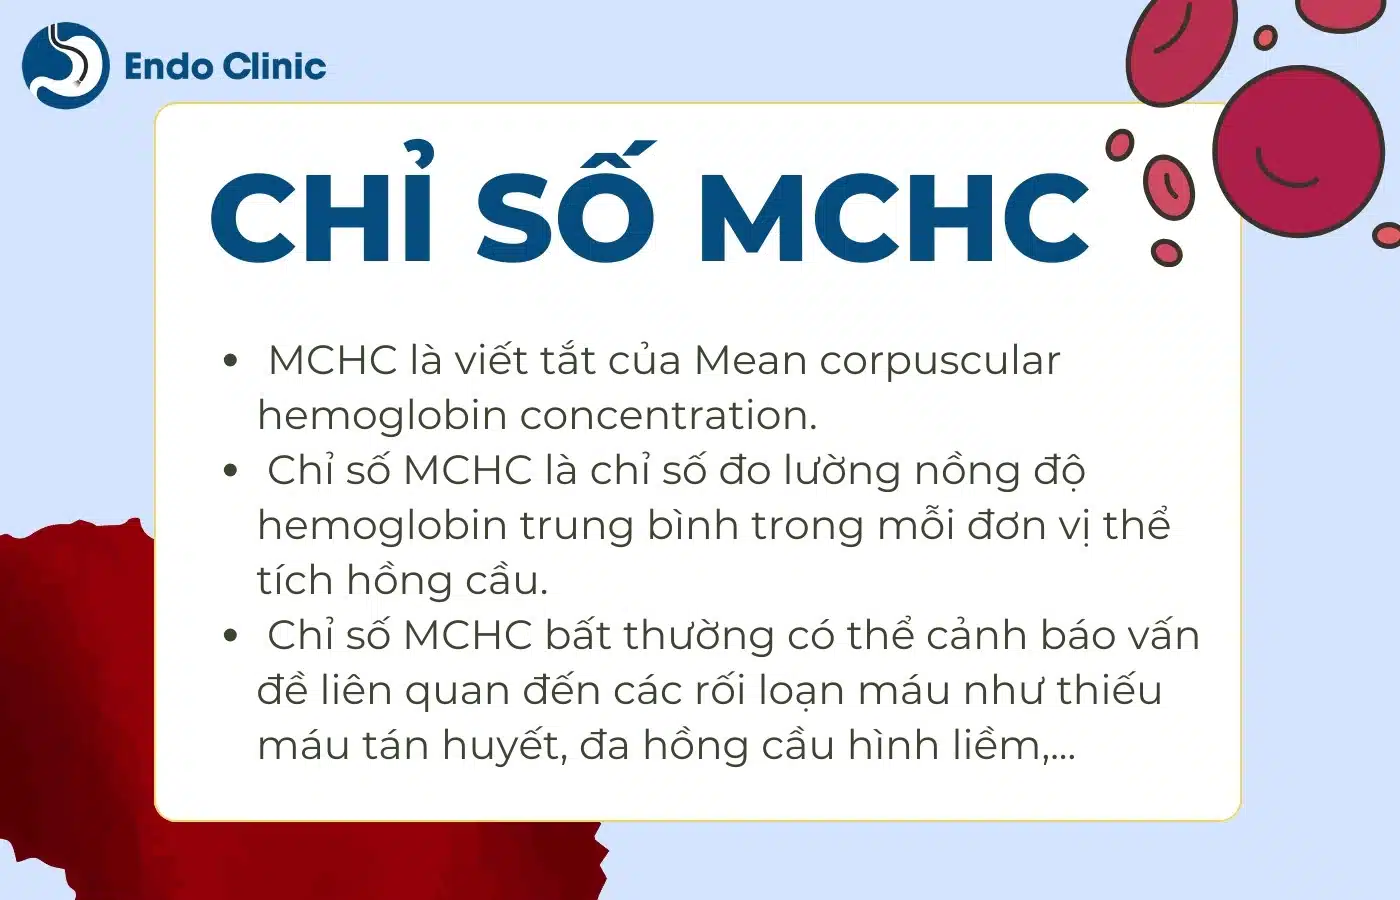 Tầm quan trọng của việc theo dõi chỉ số MCHC định kỳ